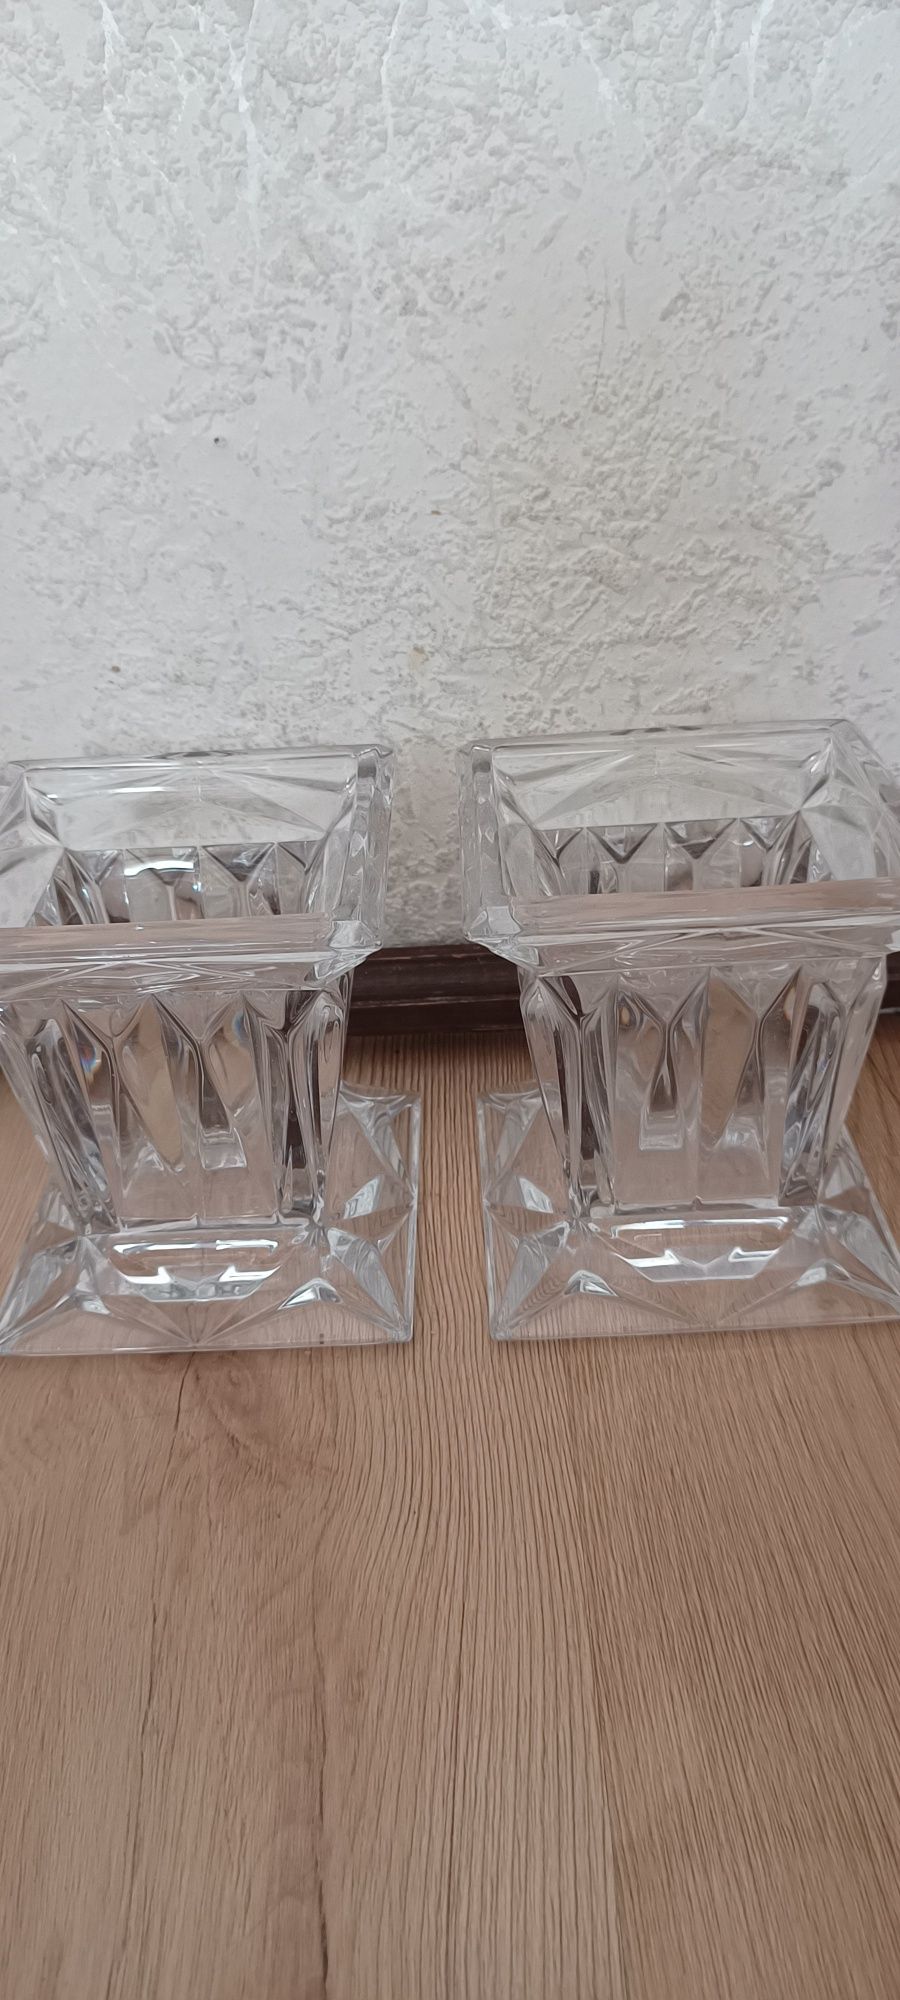 Dwa szklane wazony